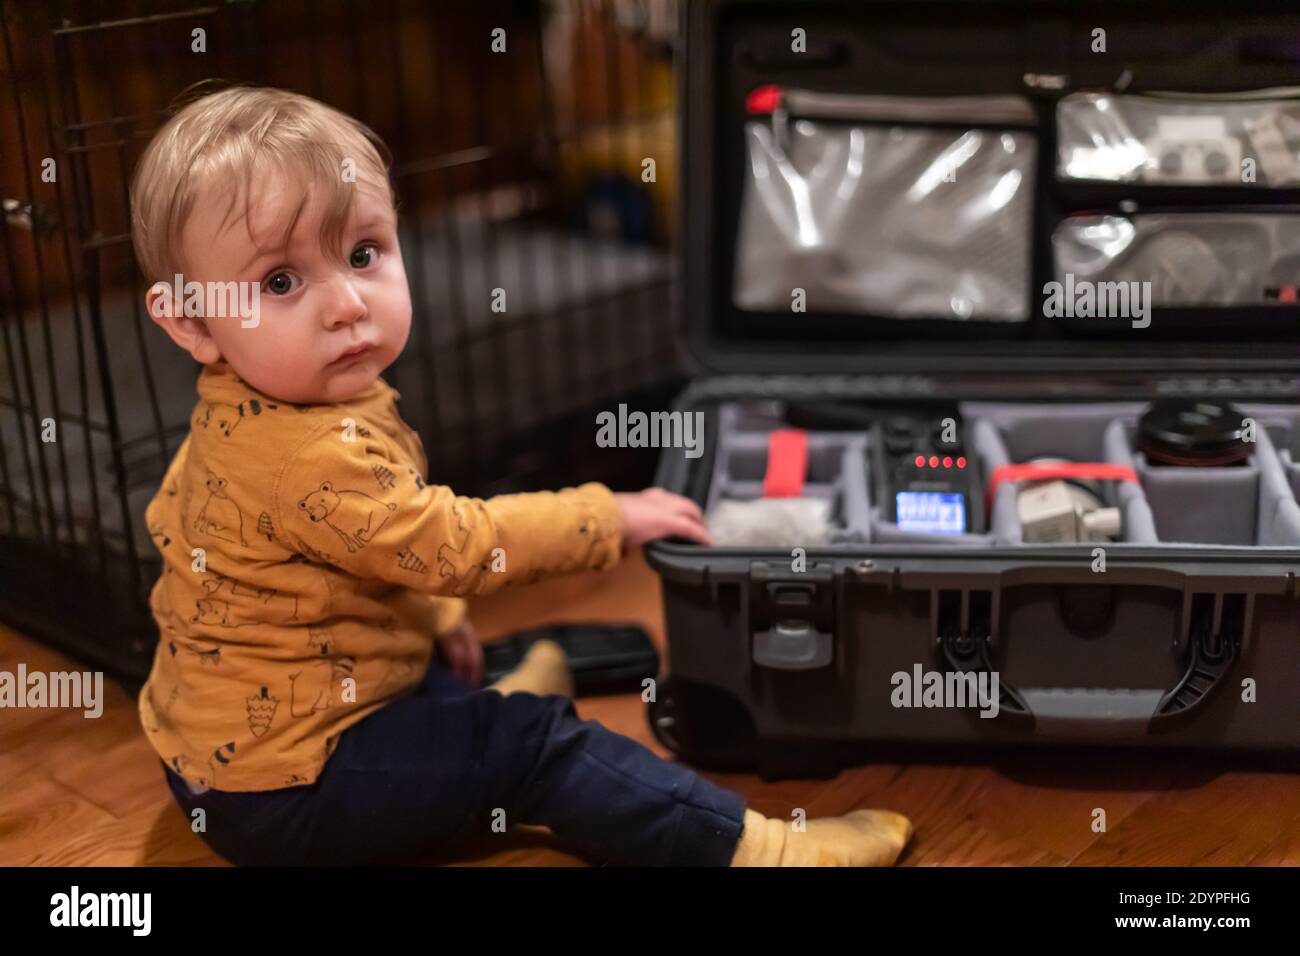 Netter kleiner Junge, der die Kamera anschaut, während er den Koffer seines Vaters berührt, der mit professioneller Videoausrüstung gefüllt ist. Neugierde und Entdeckungskonzept. Stockfoto